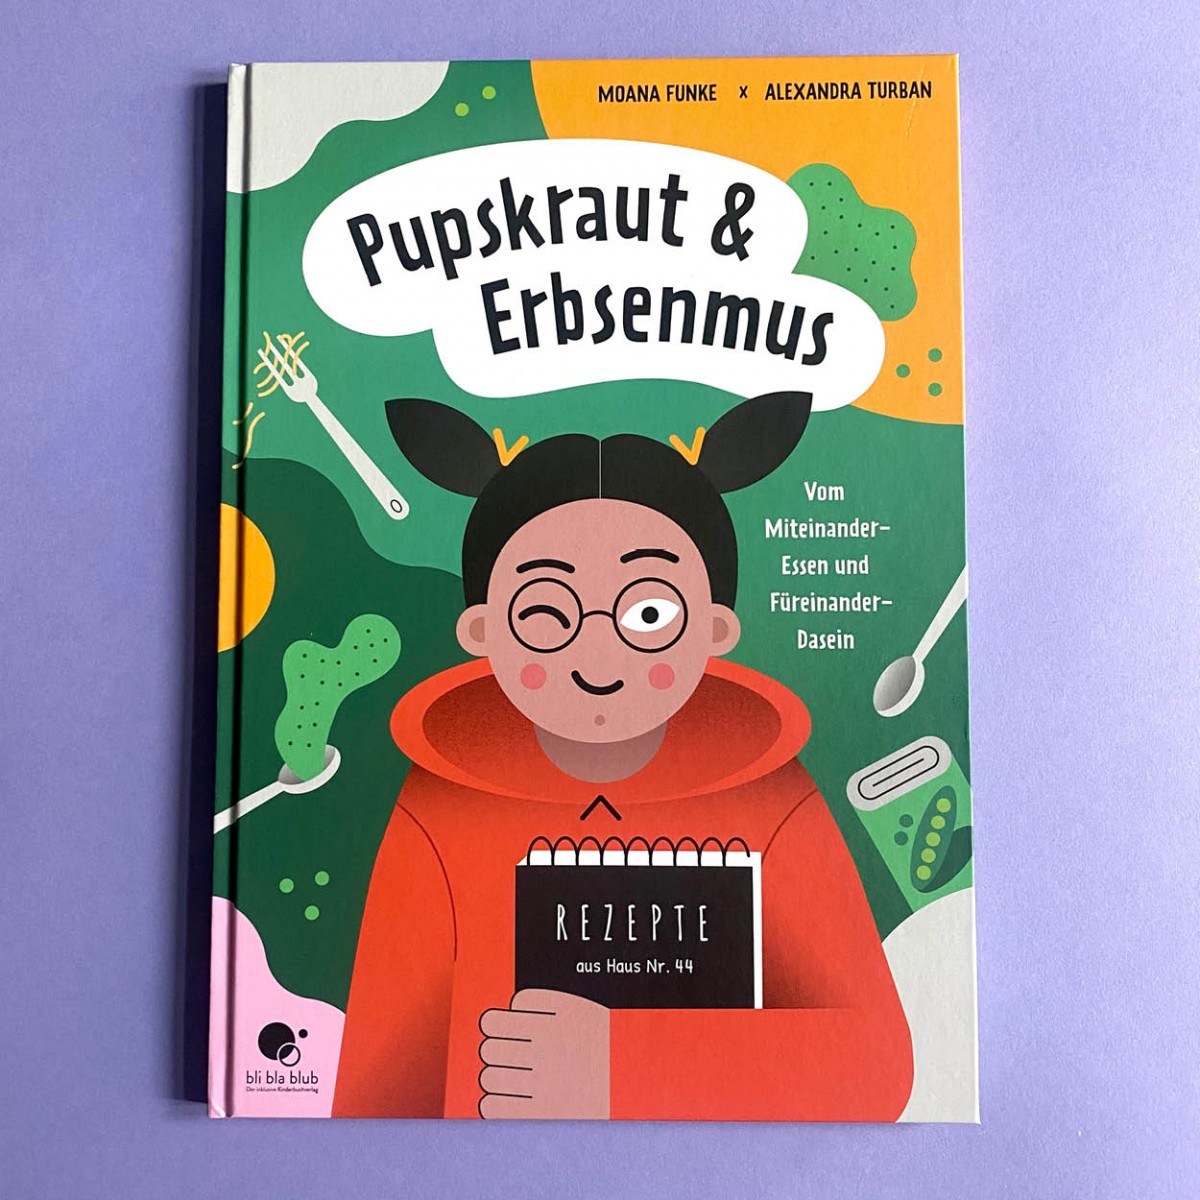 bli bla blub Verlag Kinderbuch Pupskraut & Erbsenmus mit vielen tollen Extras